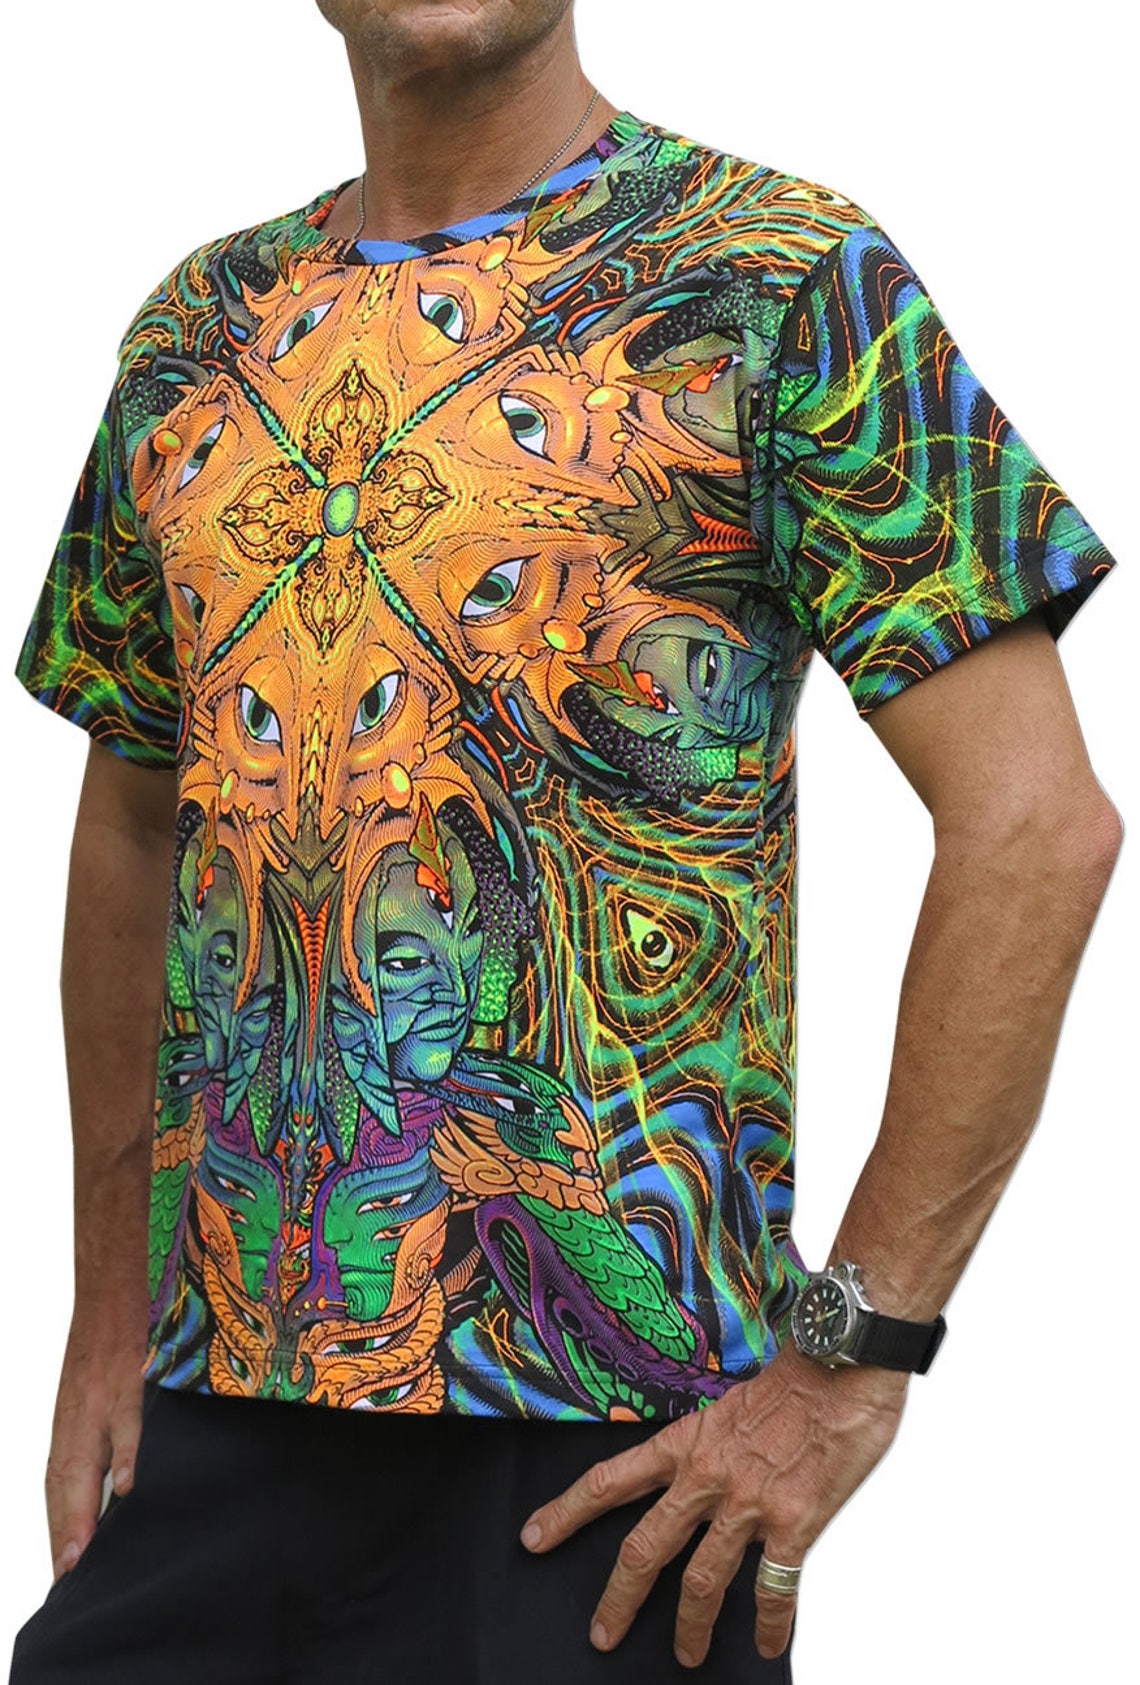 Psychedelic T Shirt 'polymorph'. Goa Clothing UV | Etsy